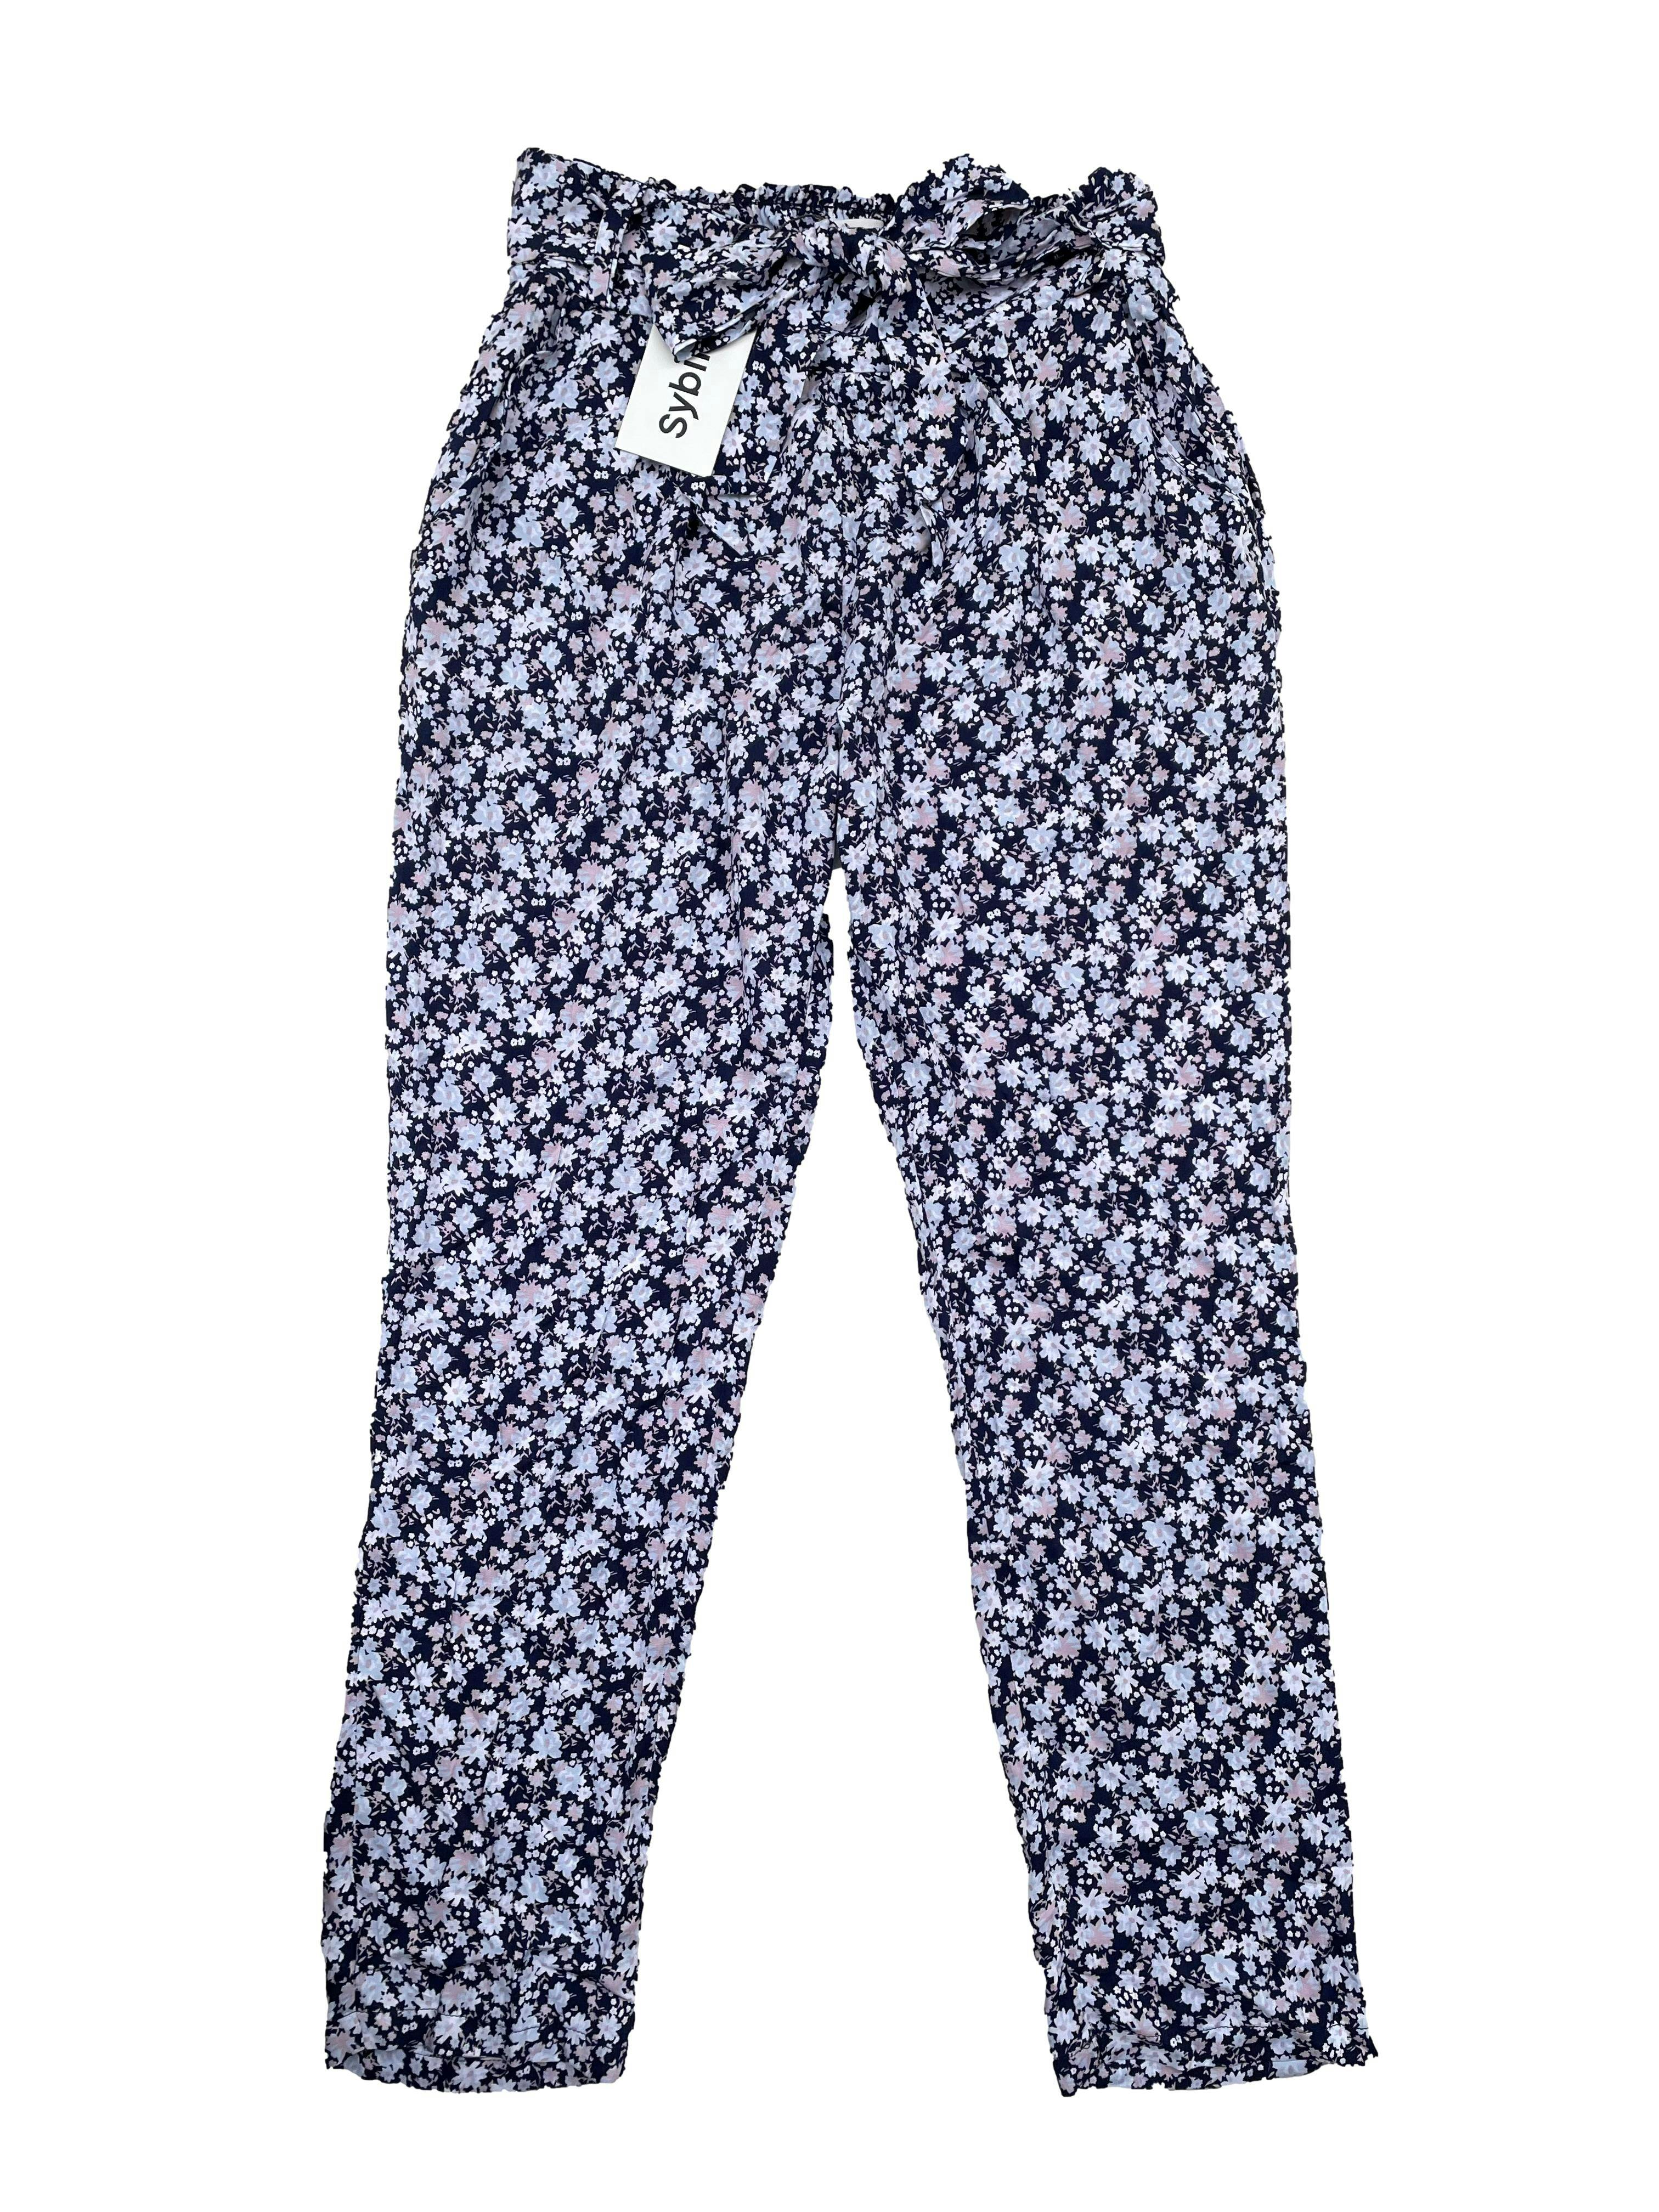 Pantalón Sybilla tela tipo chalis azul con flores, tiene bolsillos pretina panal de abeja, cinto y bolsillos. Cintura 70cm Largo 95cm. Nuevo con etiqueta